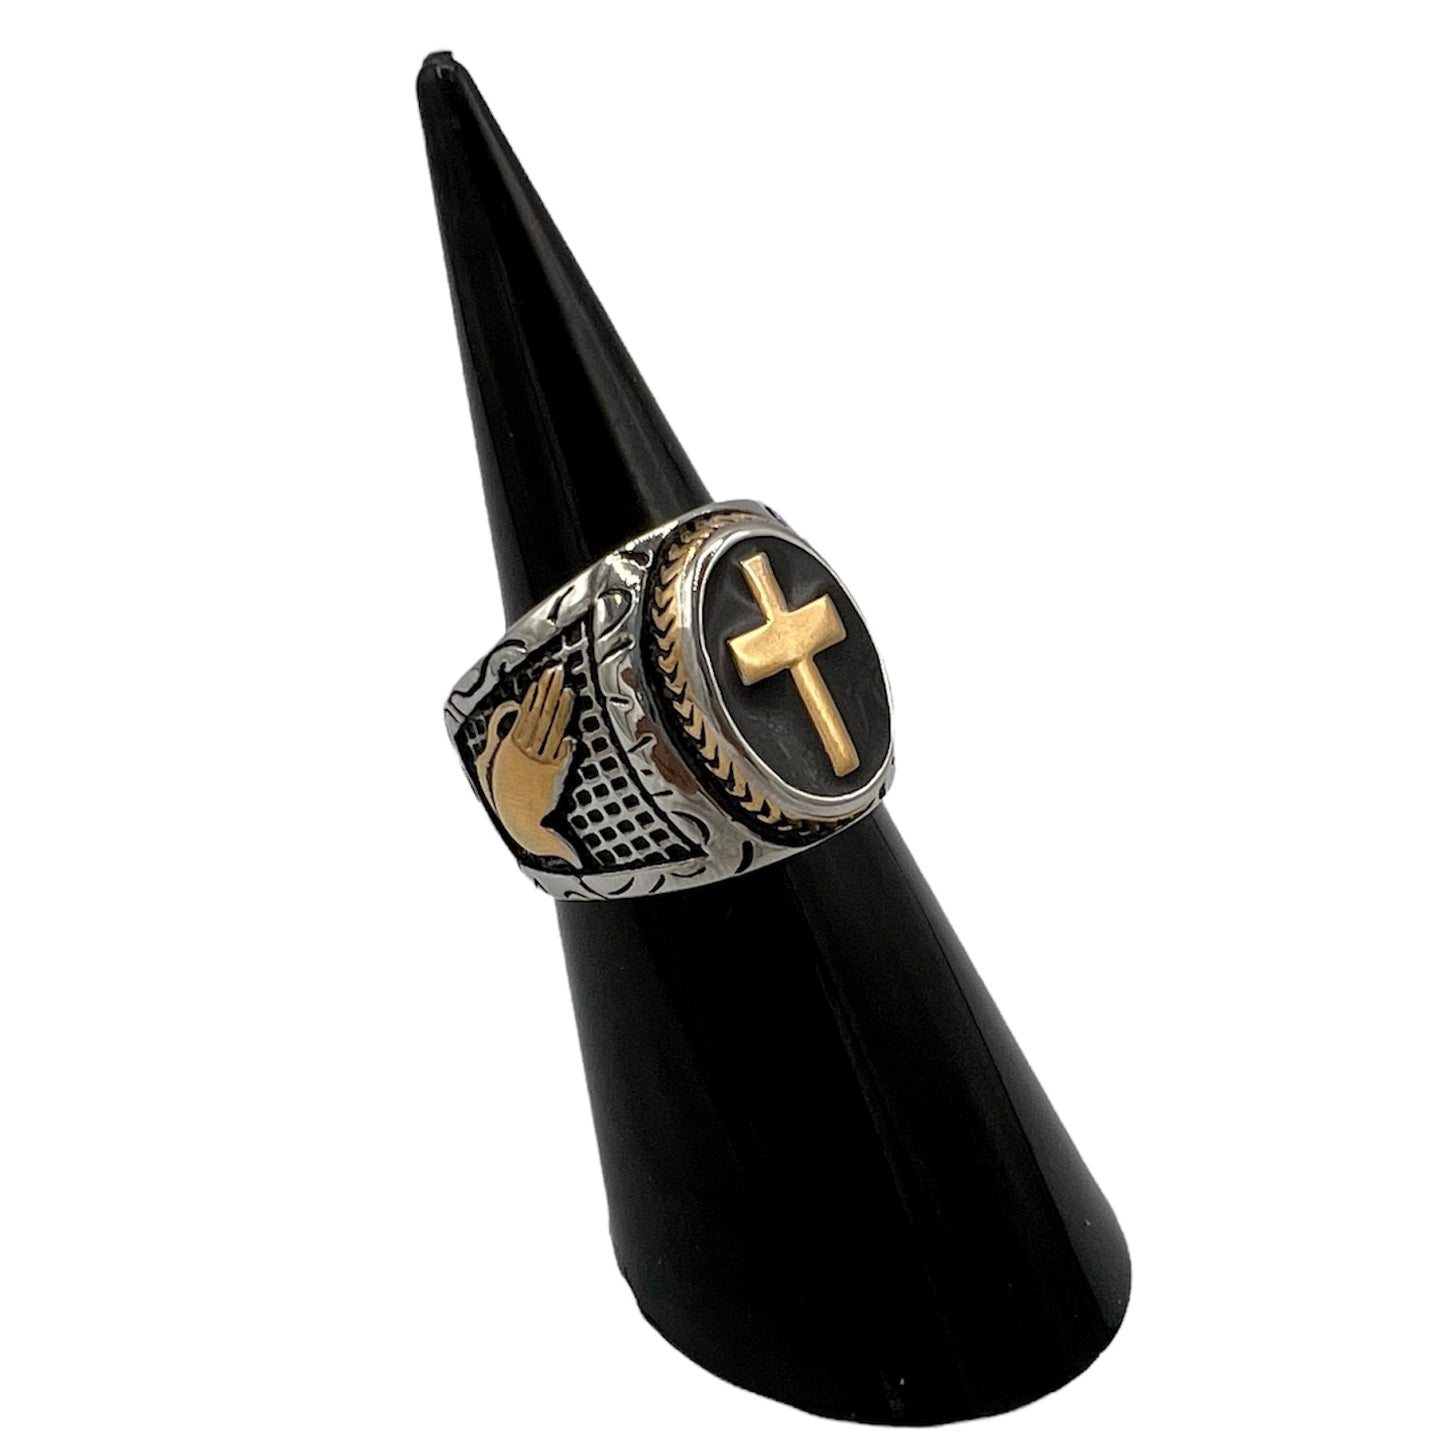 R-42 Stainless Steel Anillo Cruz/ Cross Ring, Color:Silver & Rose Gold, Seleccione el Size en la Parte de Abajo donde dice Size